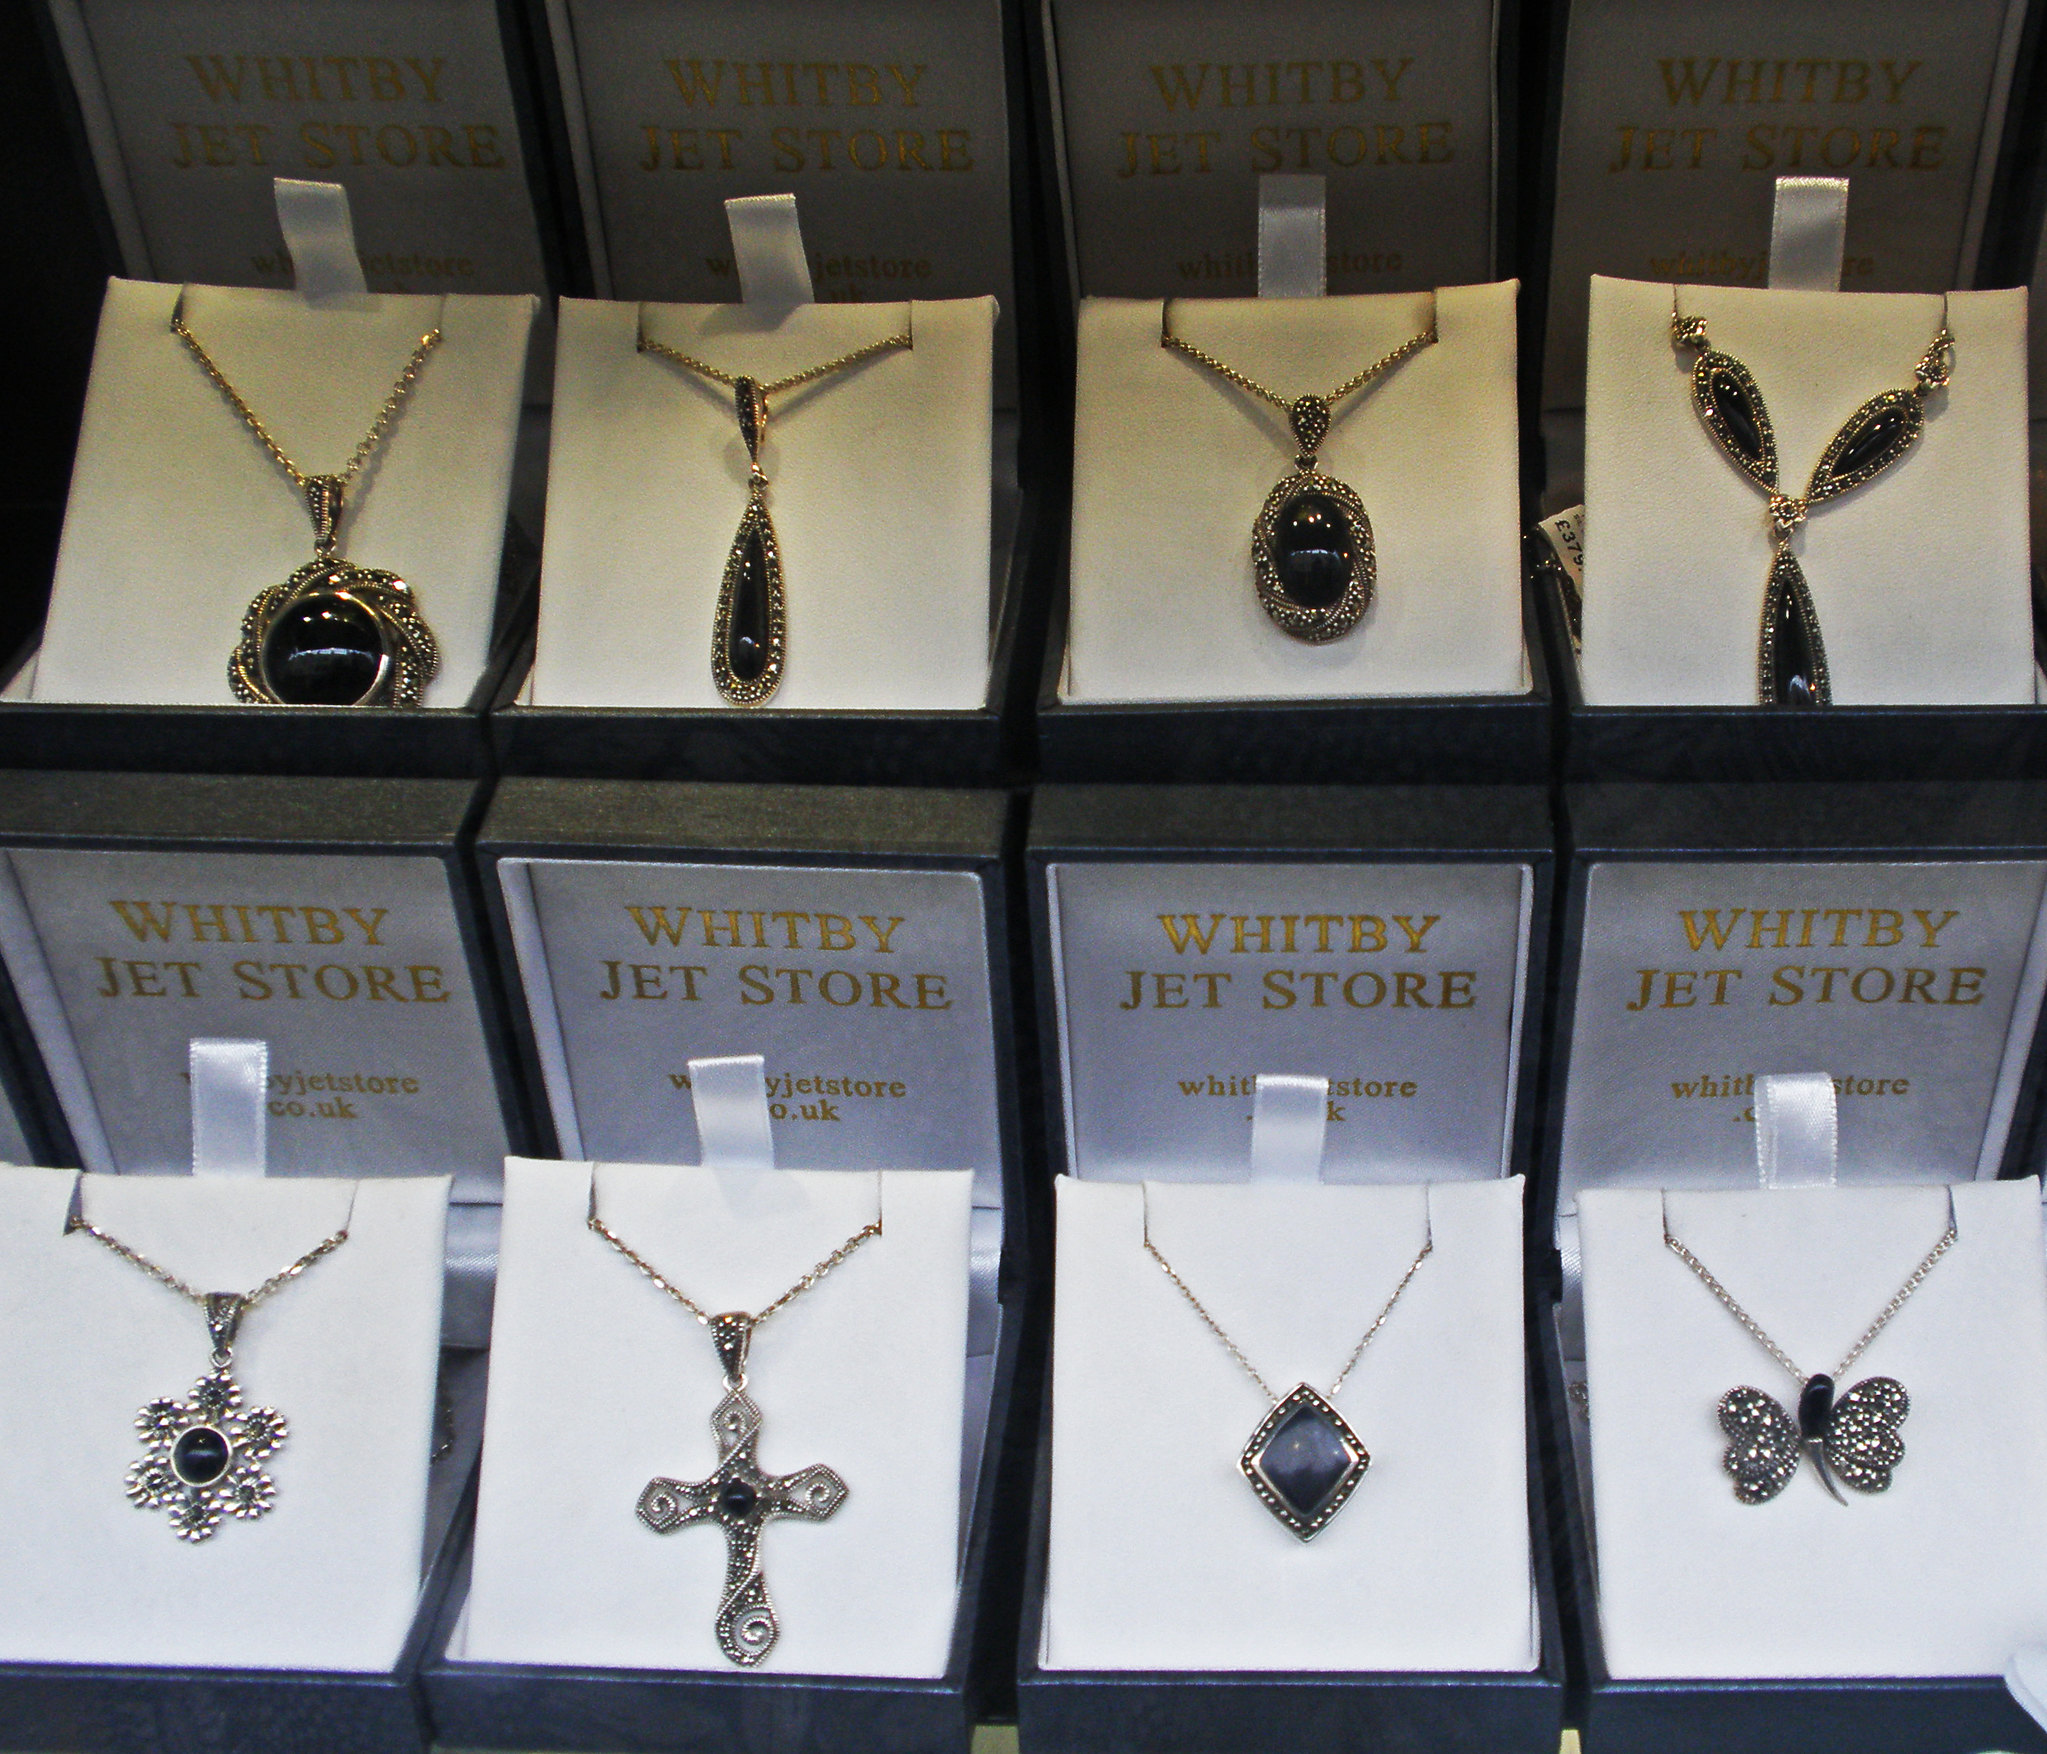 8 boites ouvertes de joiallerie montrant chacune un pendentif en argent en en jais avec des formes de croix, de rond, de losanges et de papillons.